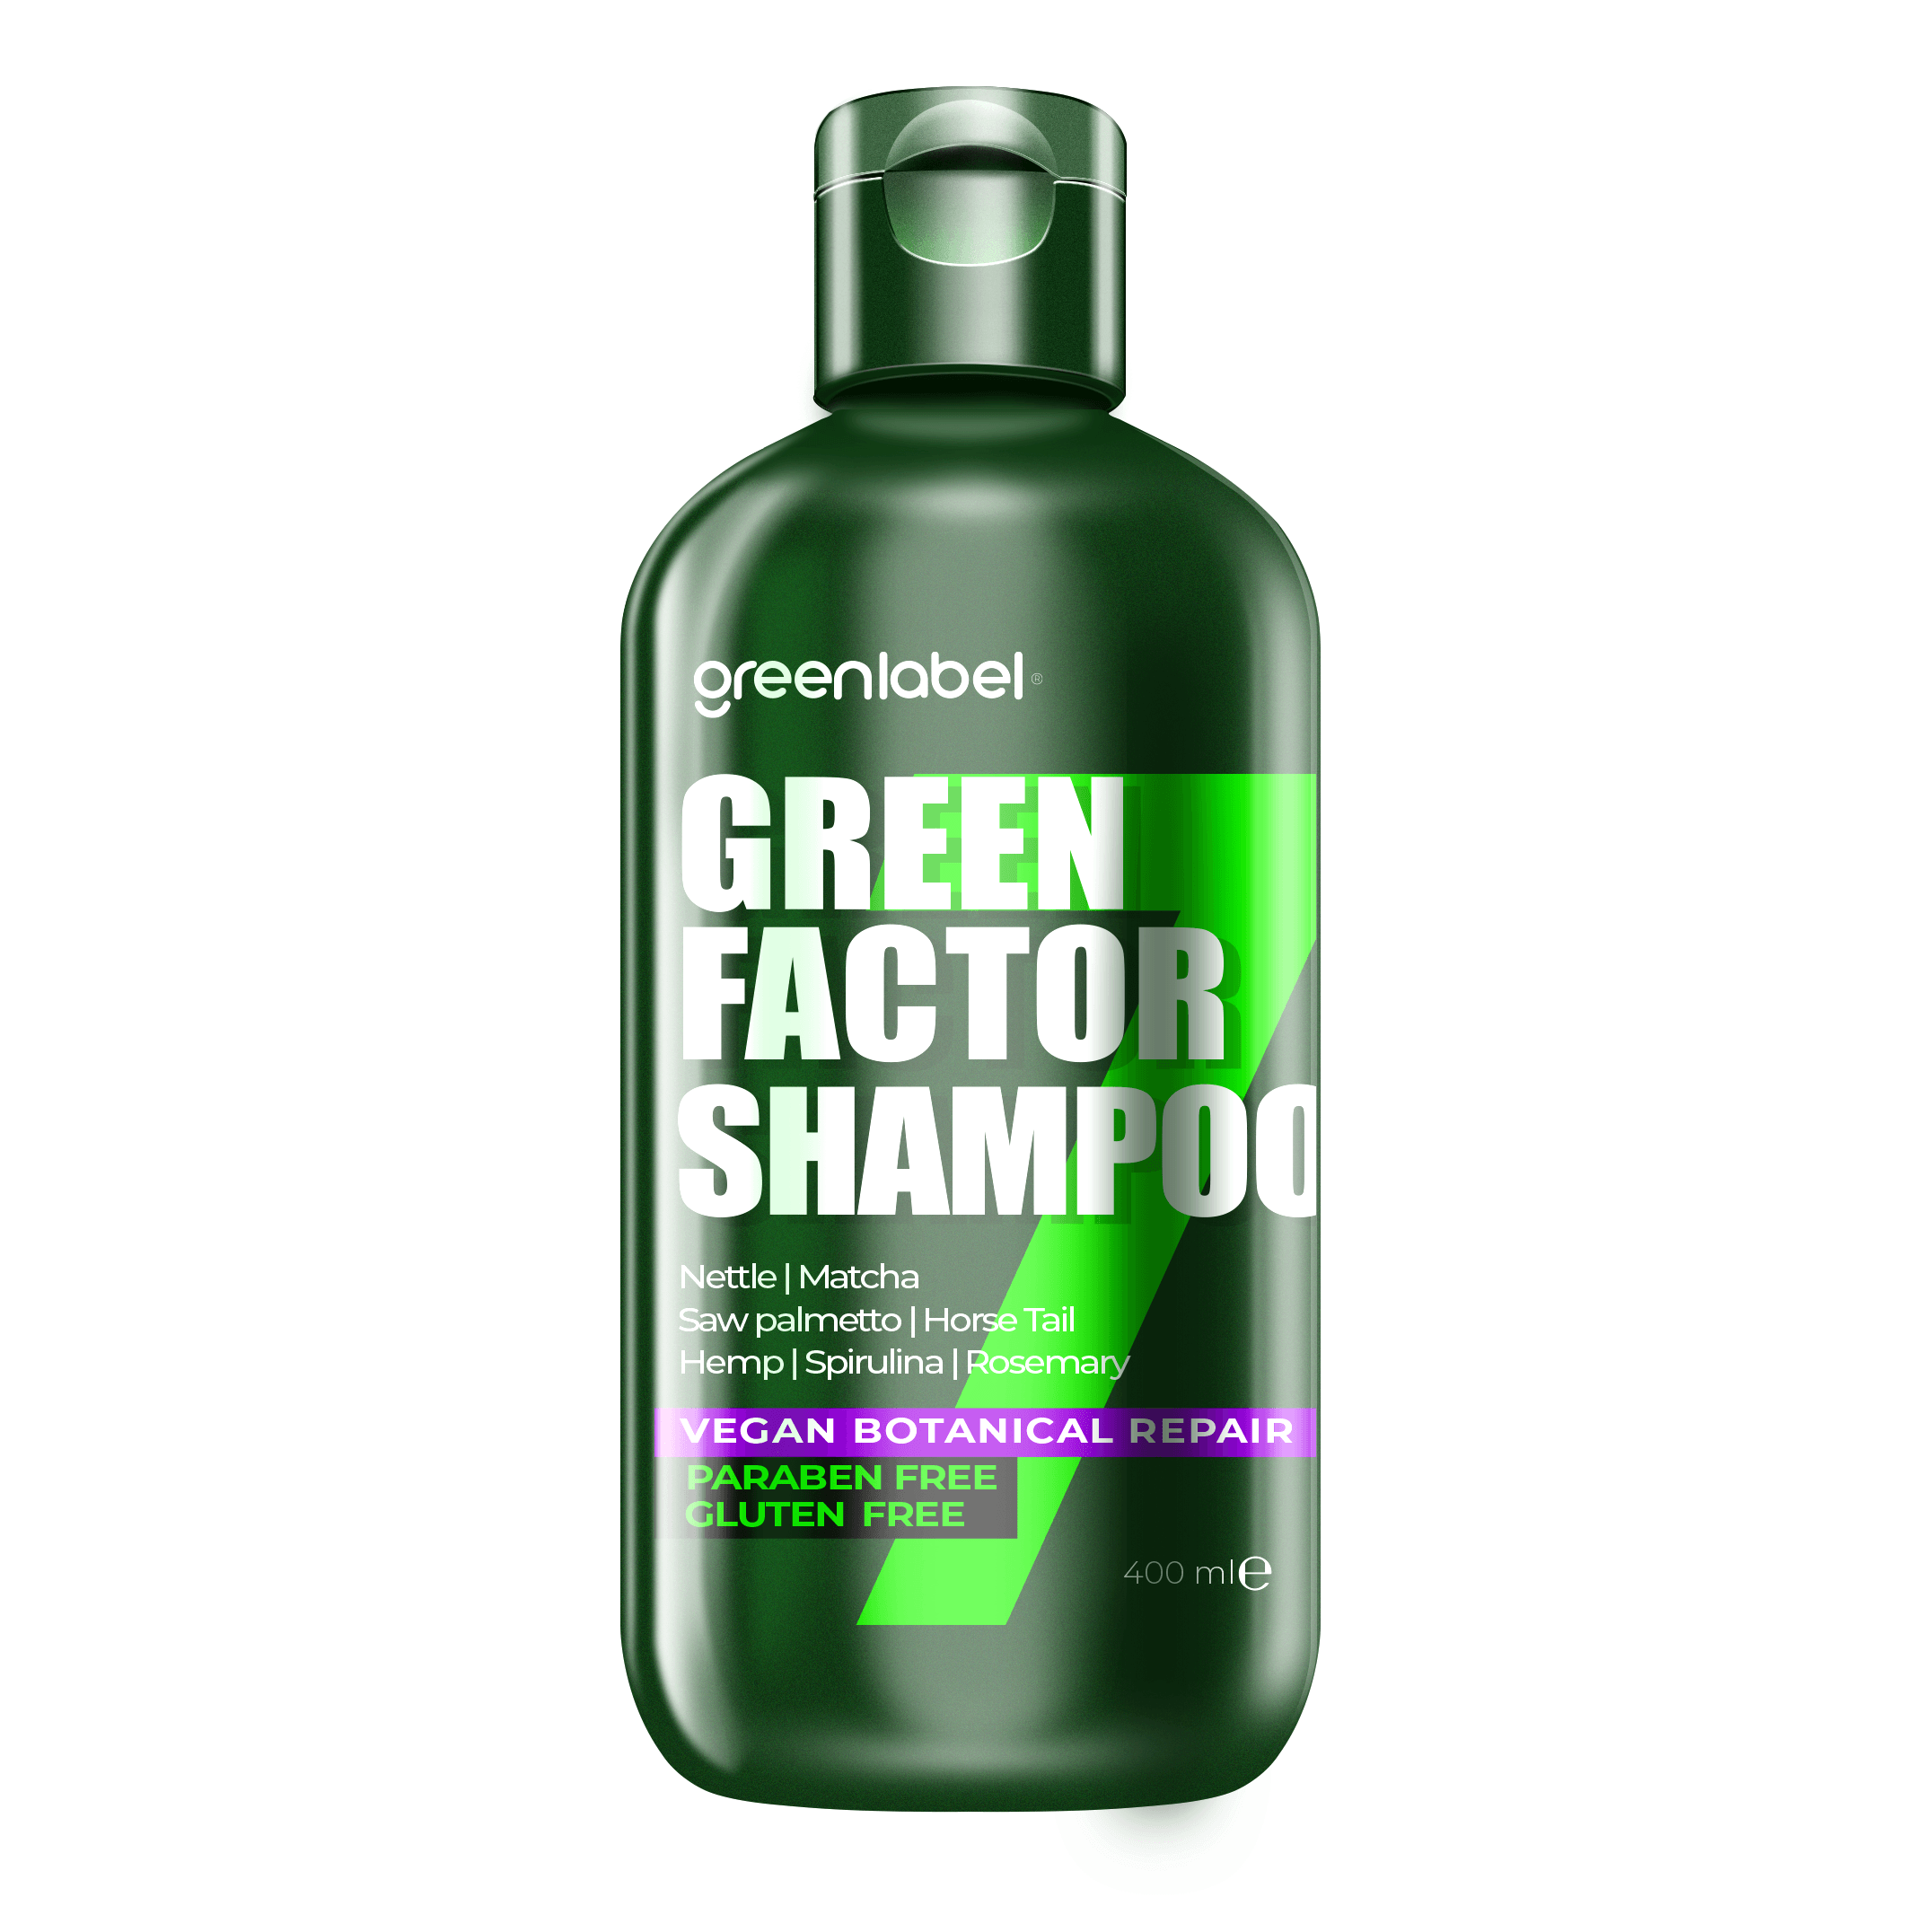 Green Factor 7 Bitkili Vegan Parabensiz Glutensiz Onarıcı ve Yoğun Bakım Şampuanı 400ml. image